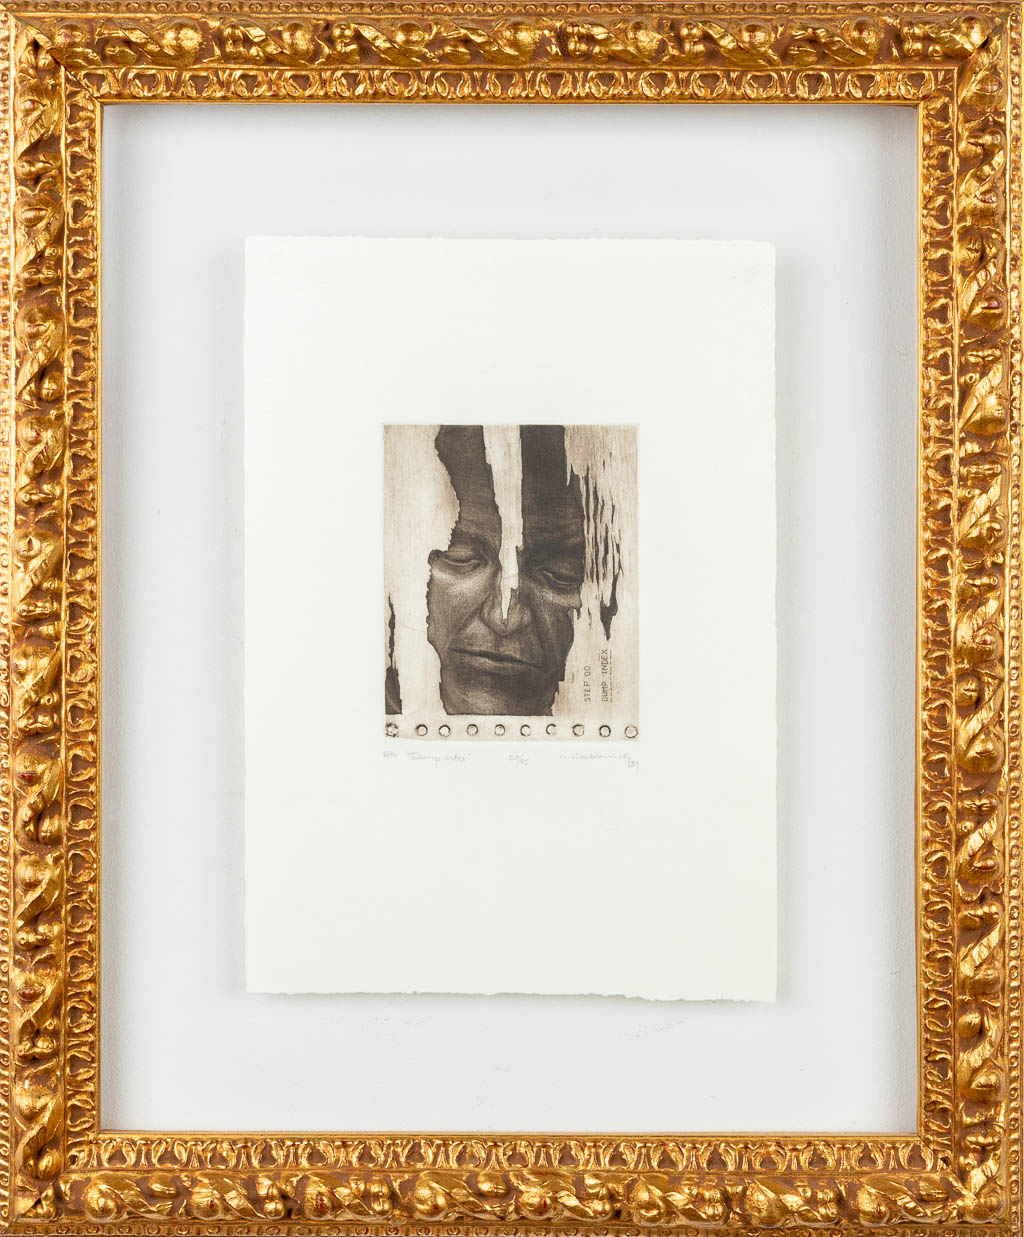 Rik SLABBINCK (1914-1991) 'Dump Index' a lithograph, numbered 20/25, 1989. (12,5 x 15 cm)